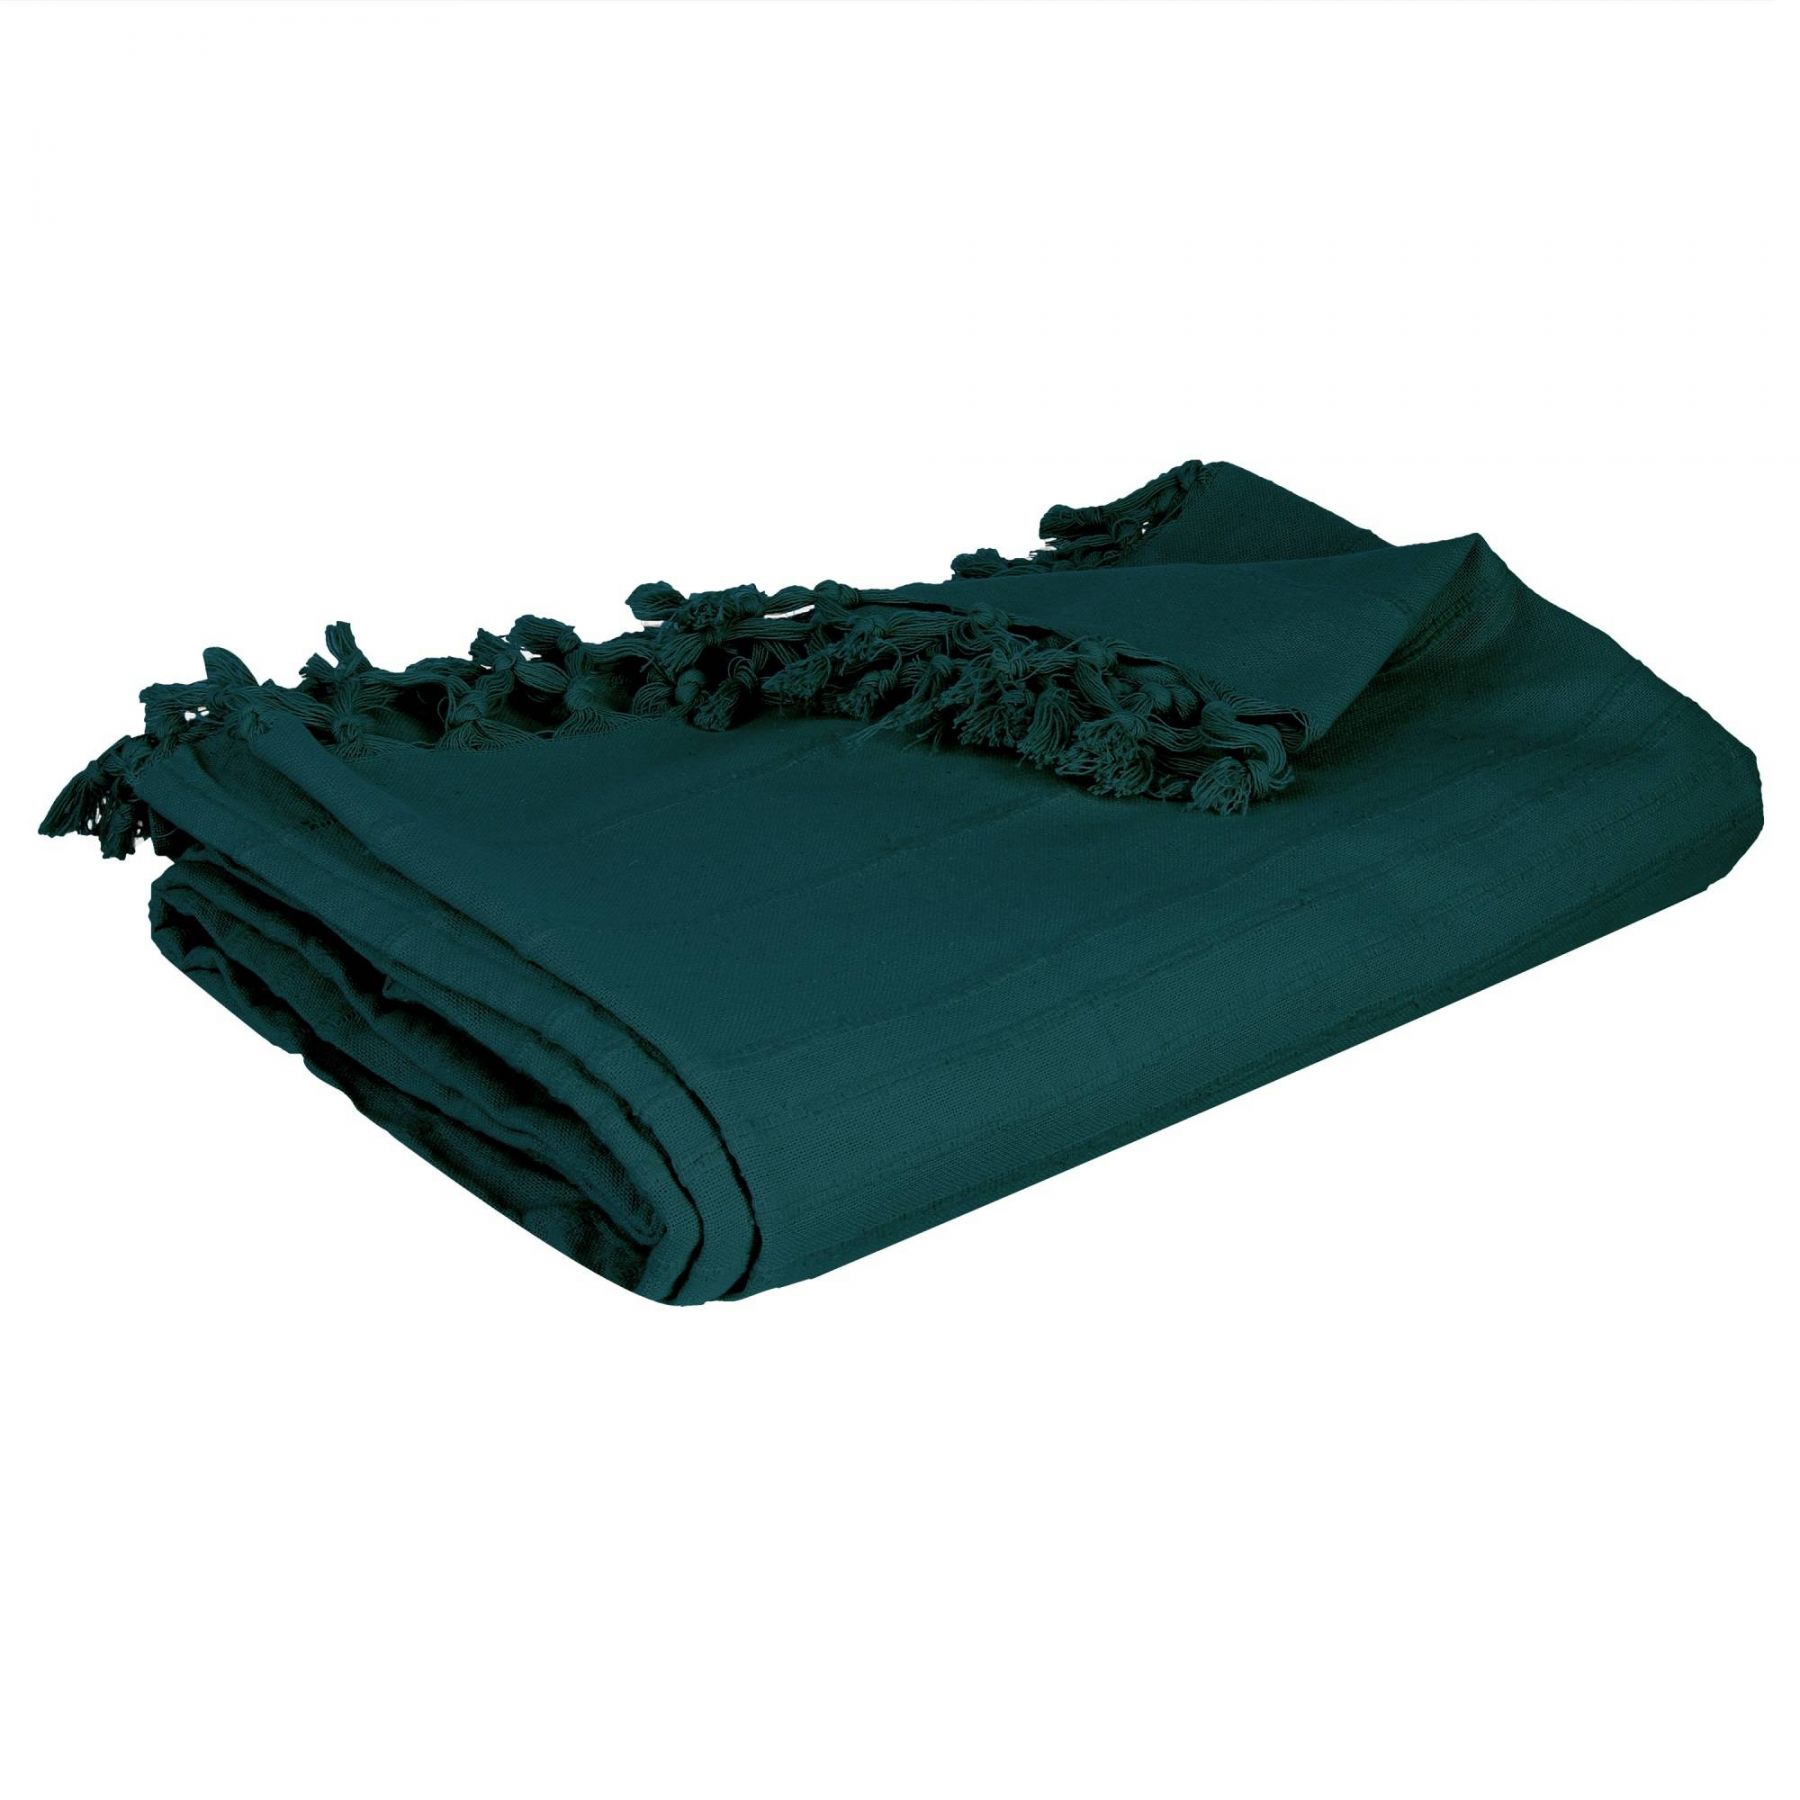 Atmosphera Přehoz na postel s třásněmi PEACOCK, 160 x 220 cm, zelený - EDAXO.CZ s.r.o.